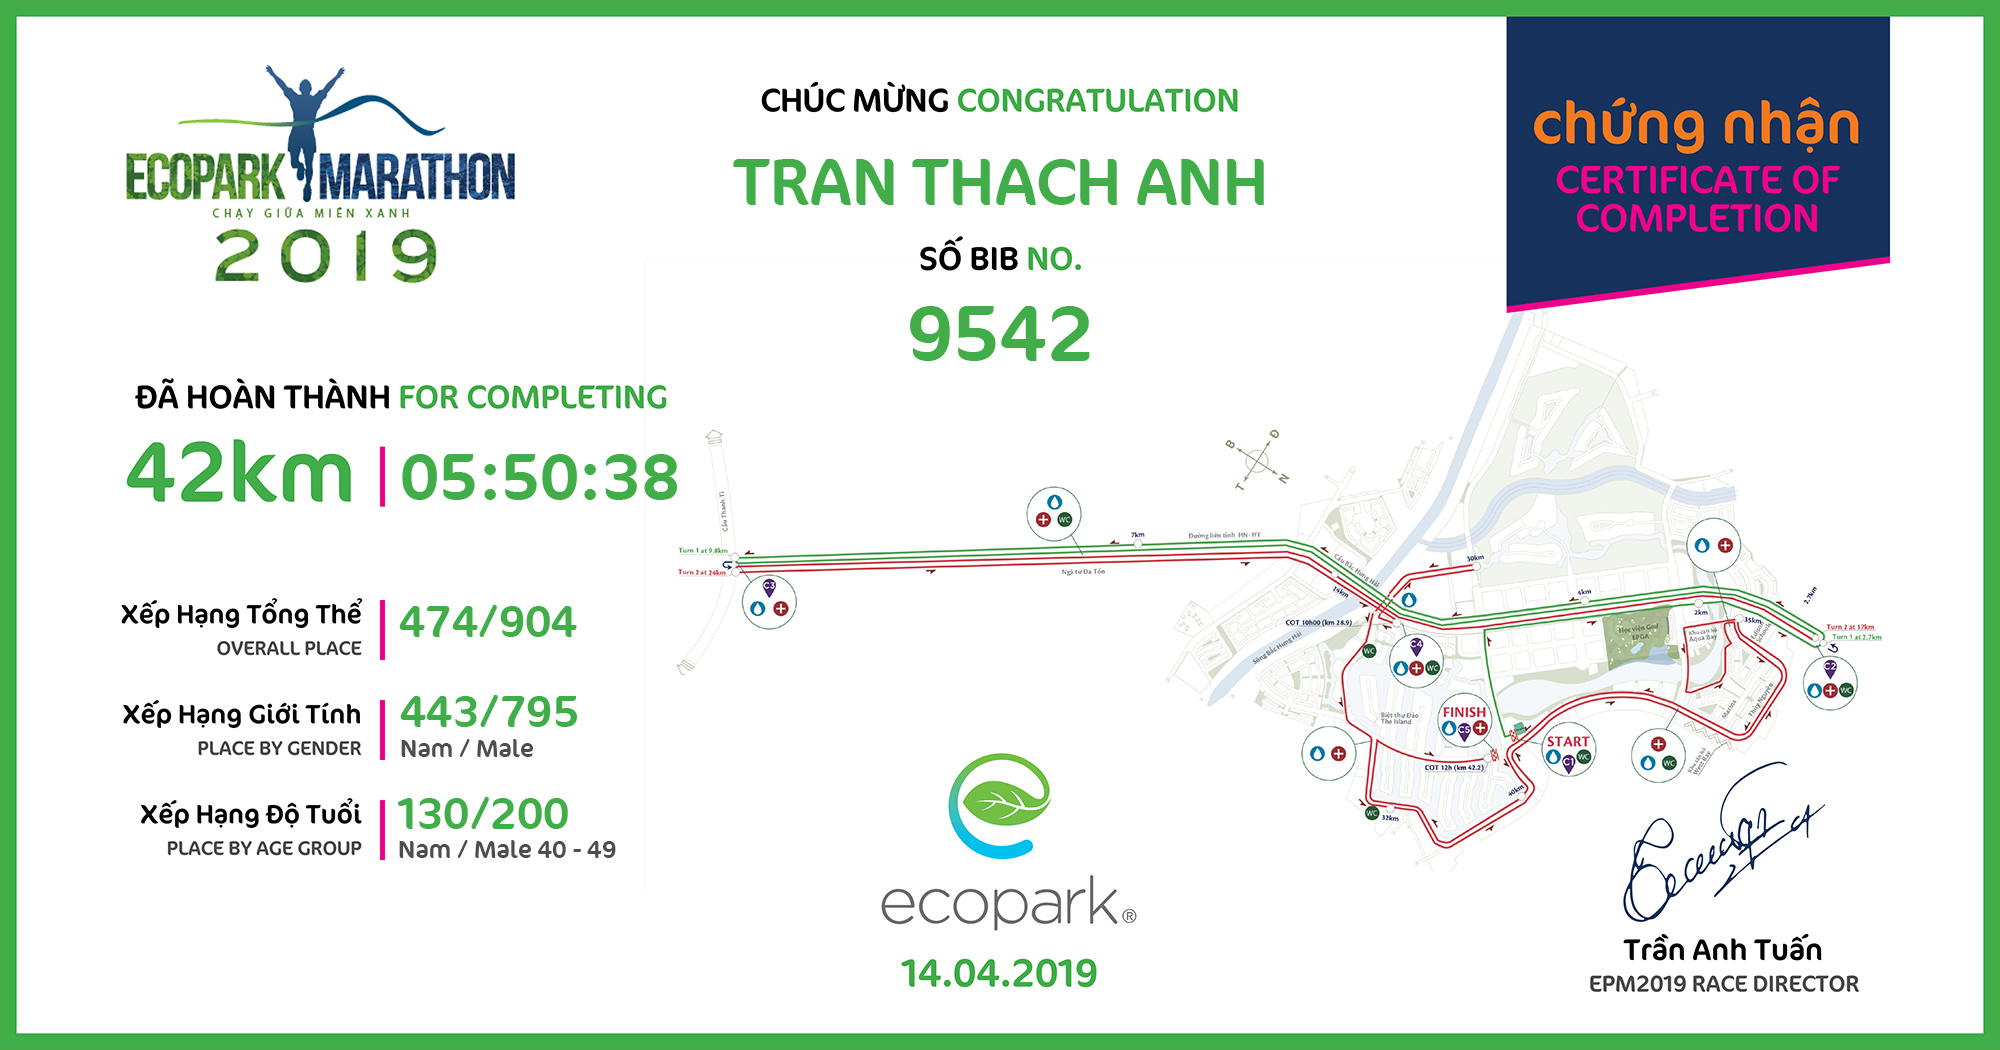 9542 - Tran Thach Anh